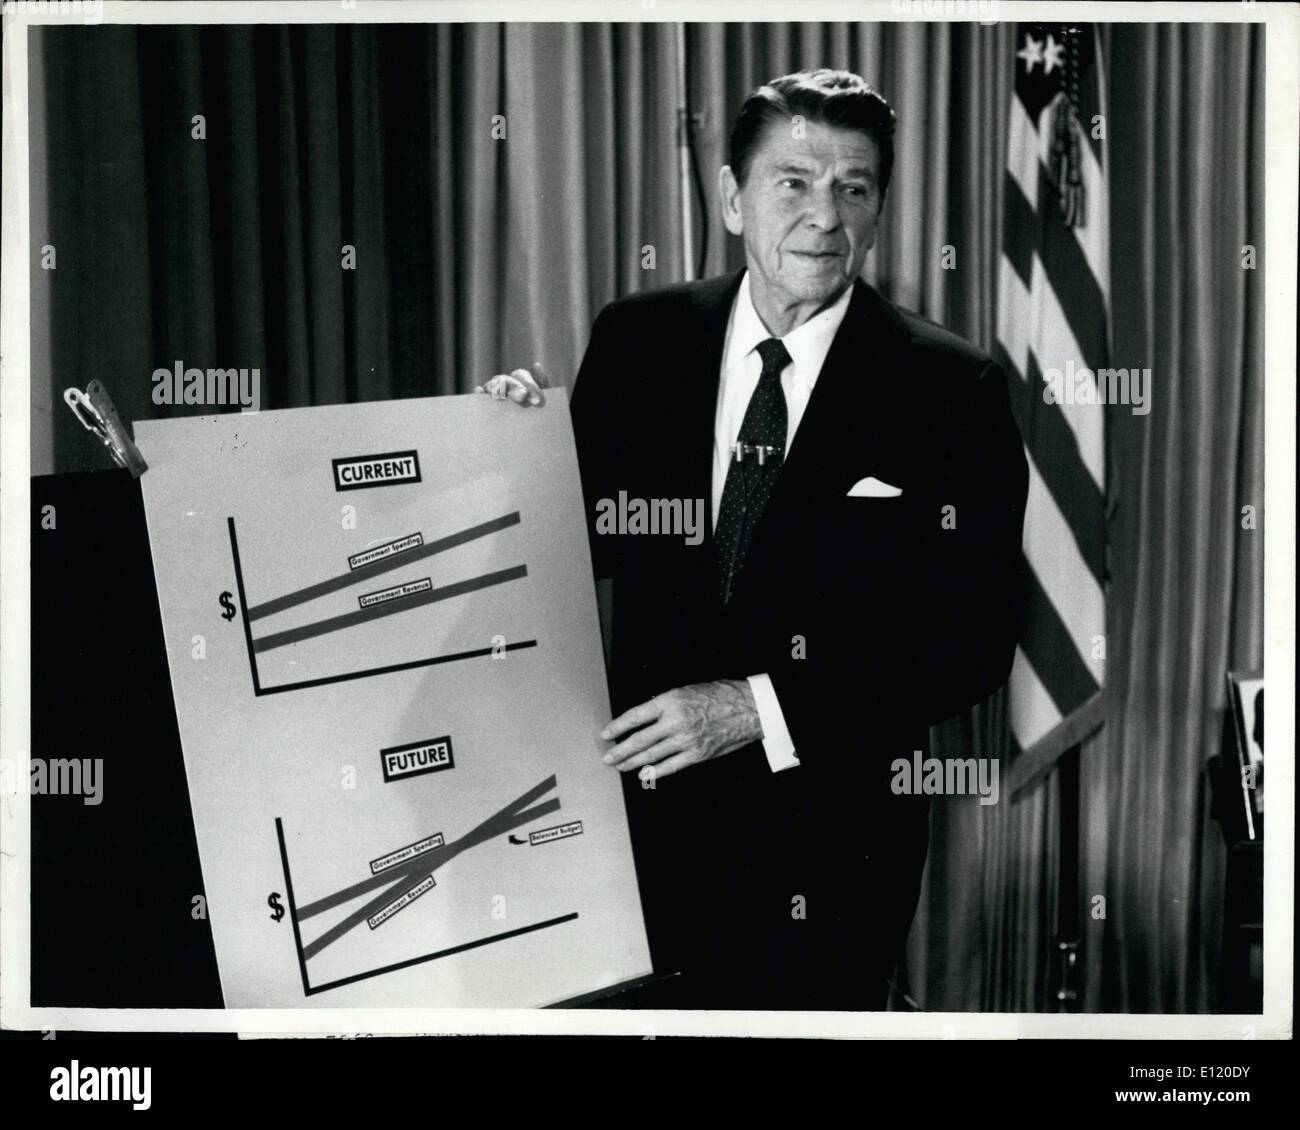 Mai 05, 1981 - Reagan sur l'économie : Washington, D.C. Le président Ronald Reagan a utilisé des graphiques pour W. le peuple américain montrer comment son budget bien travailler sous la coupe R. Administration Reagan. Le graphique montre le rapport de dépenses du gouvernement et des recettes publiques prises en. Banque D'Images